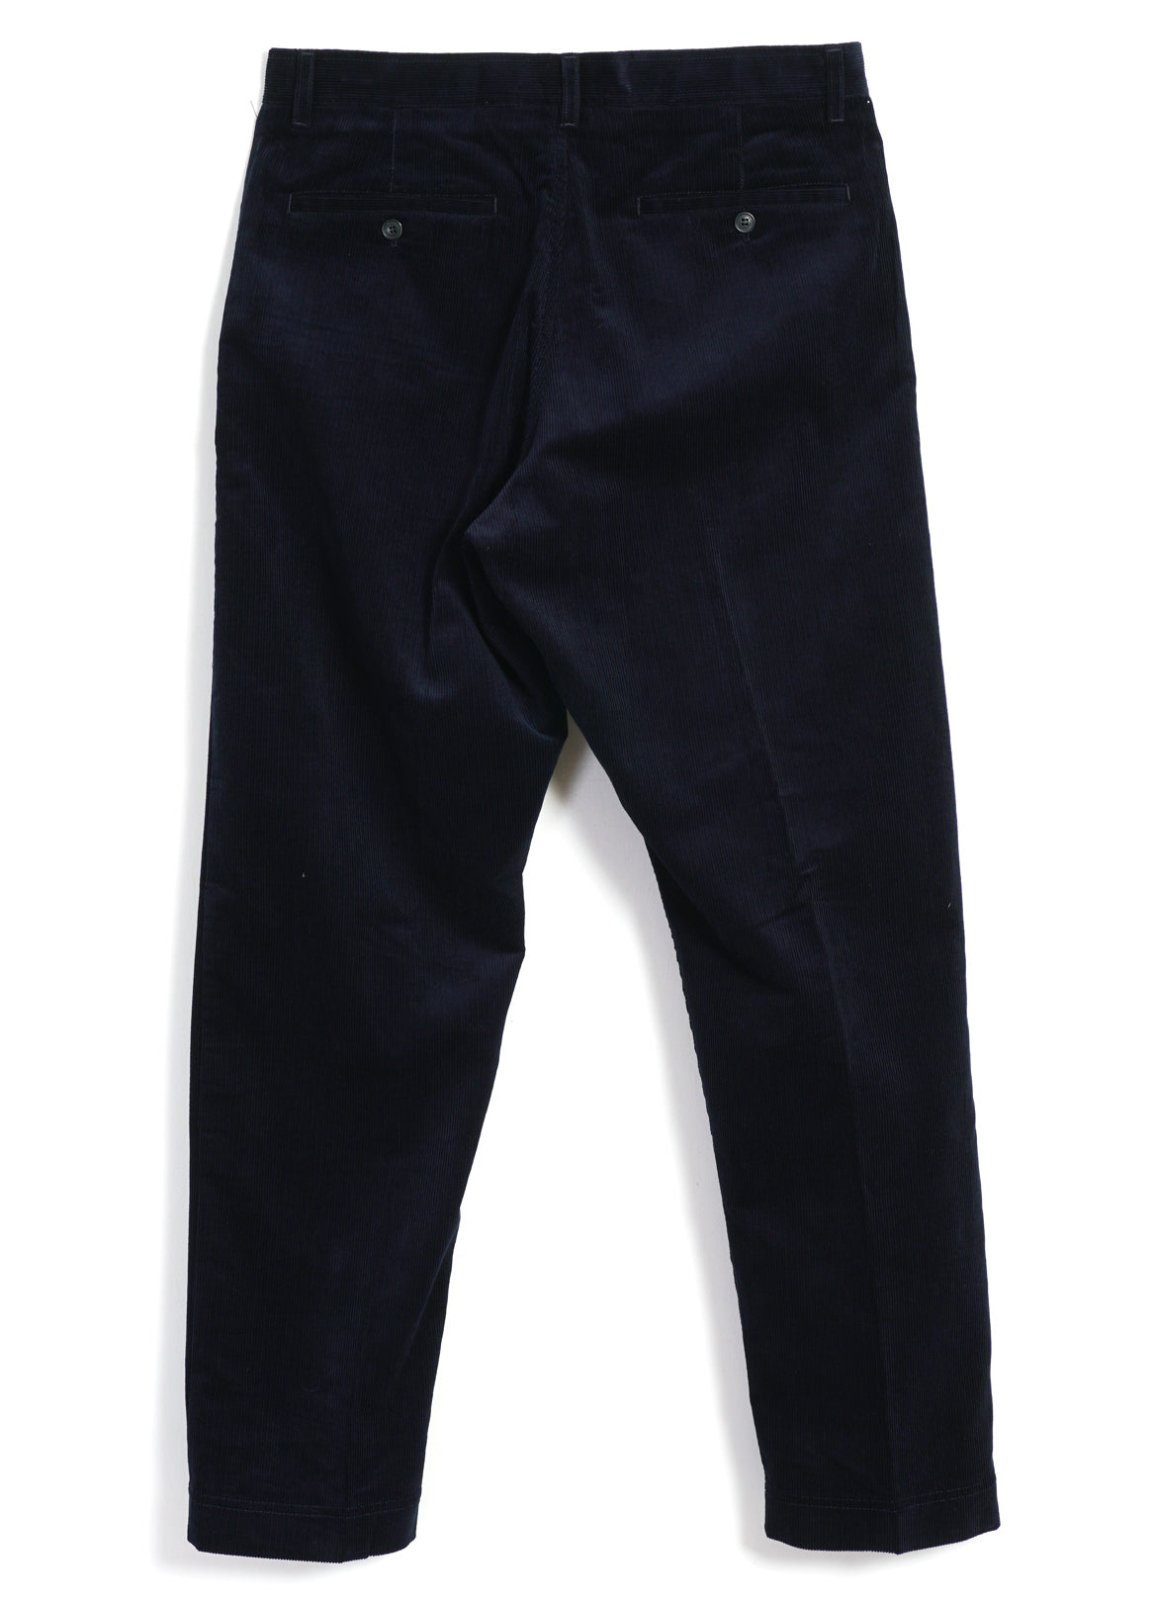 HANSEN GARMENTS - KEN | Wide Cut Trousers | Fluid Navy - HANSEN Garments